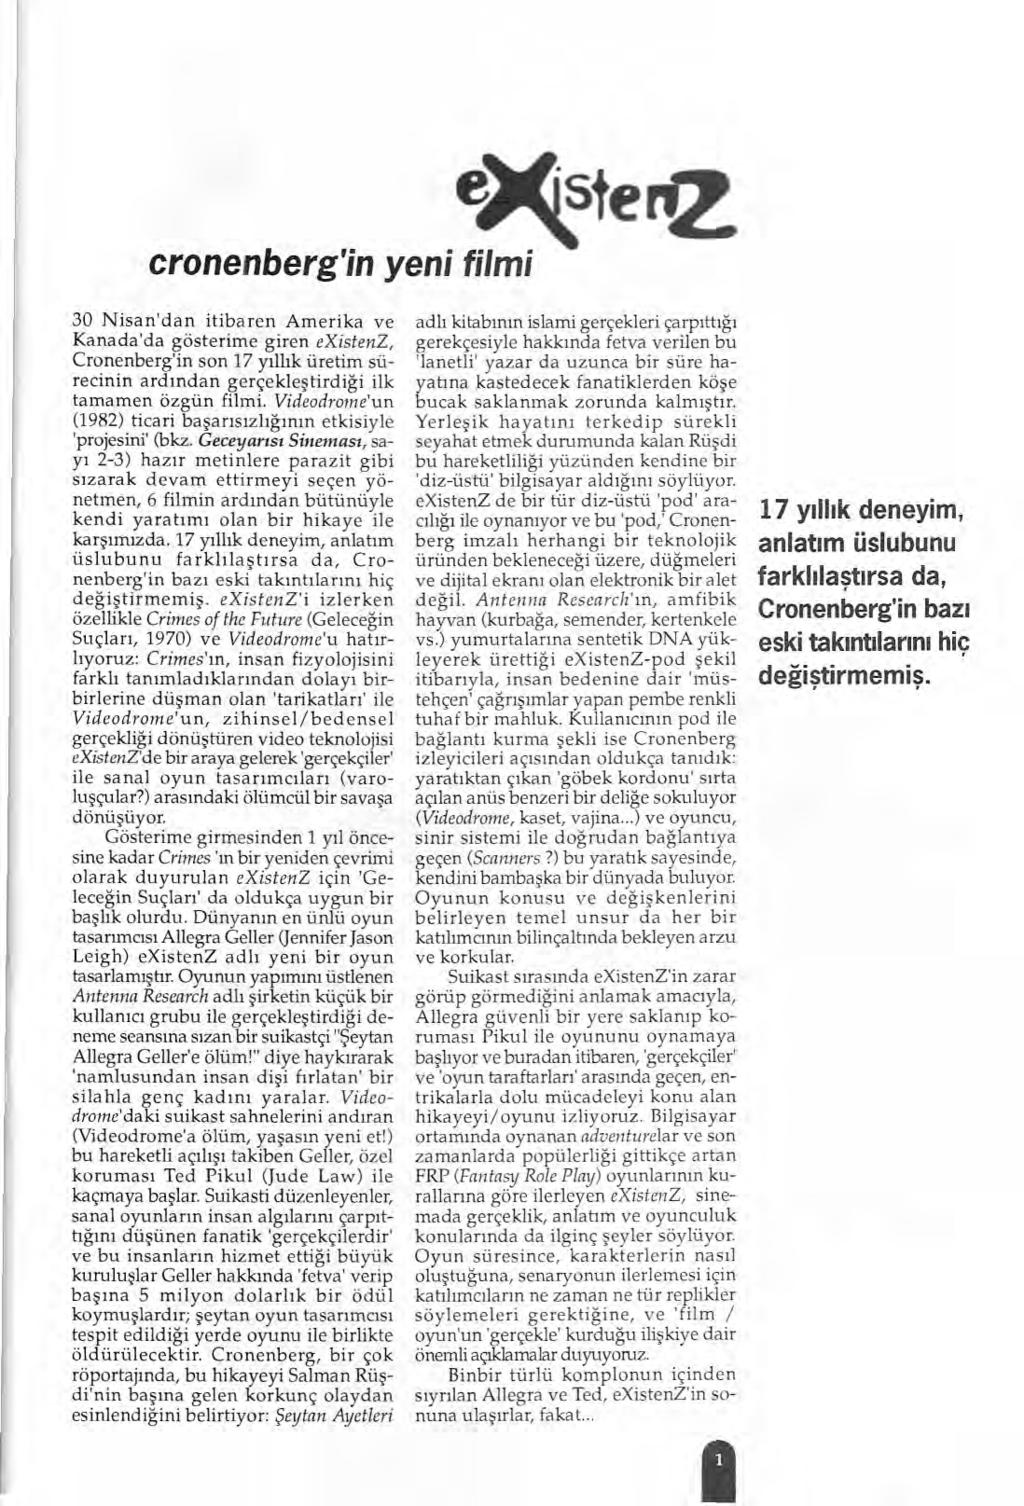 icindekiler, Cronenbergin Yeni Filmi existenz 1 Korku Sinemasinda Cadllar